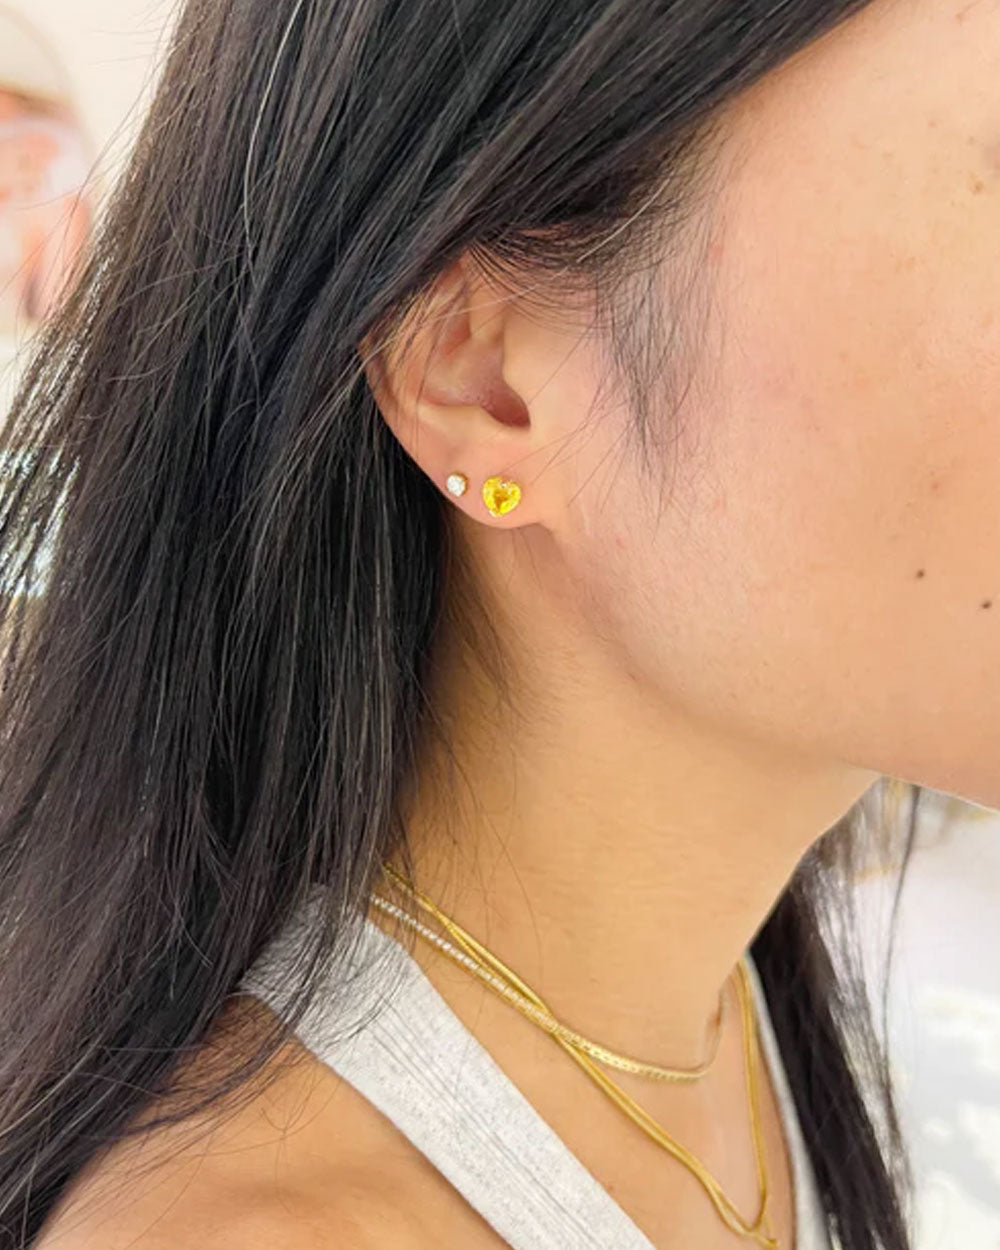 Yellow Sapphire Heart Stud Earrings